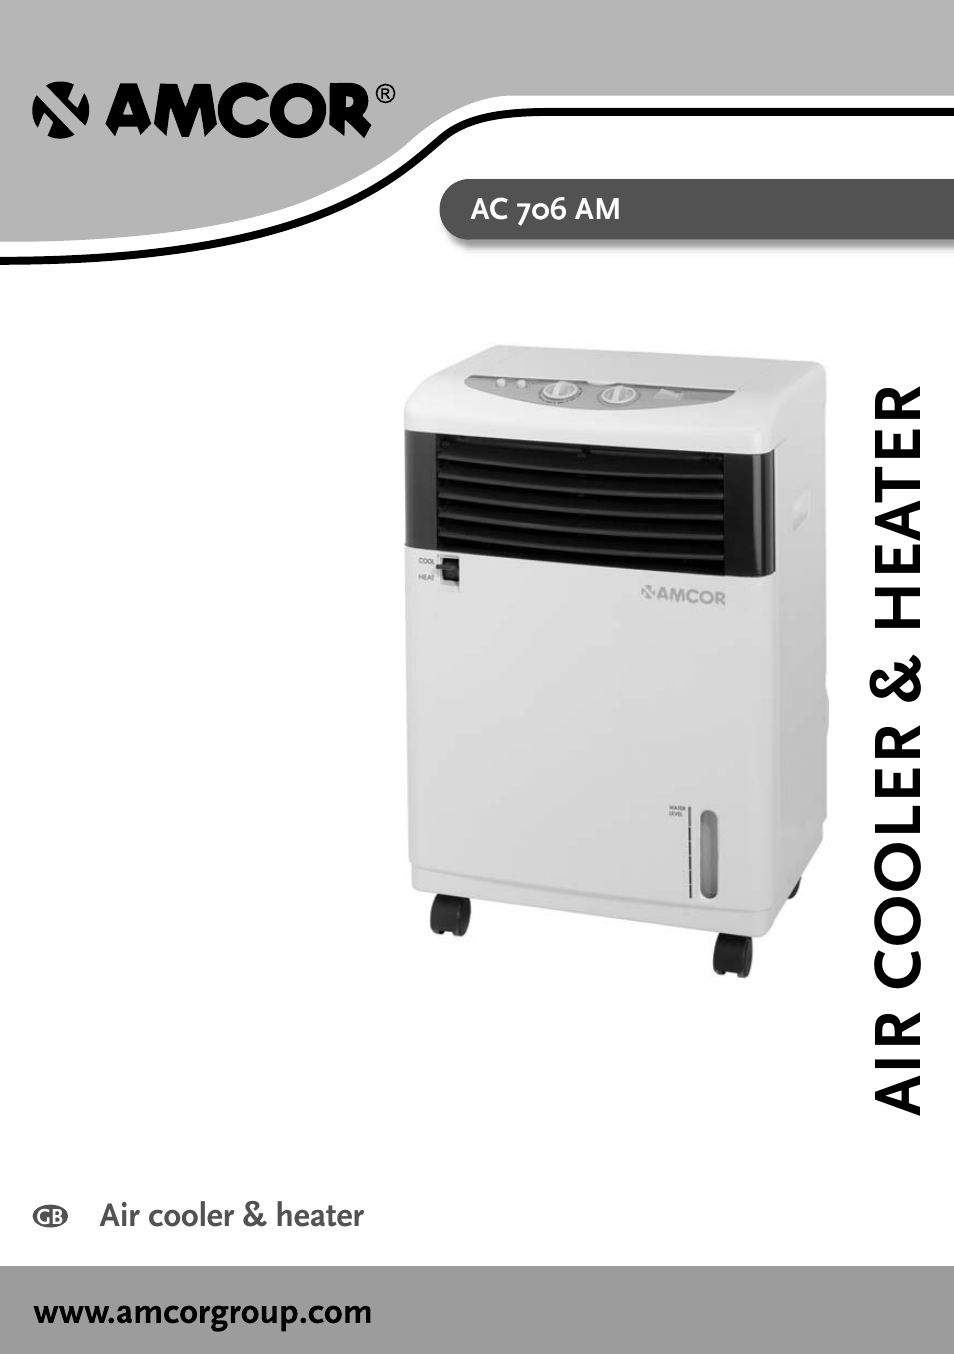 Air Cooler & Heater AC 706 AM